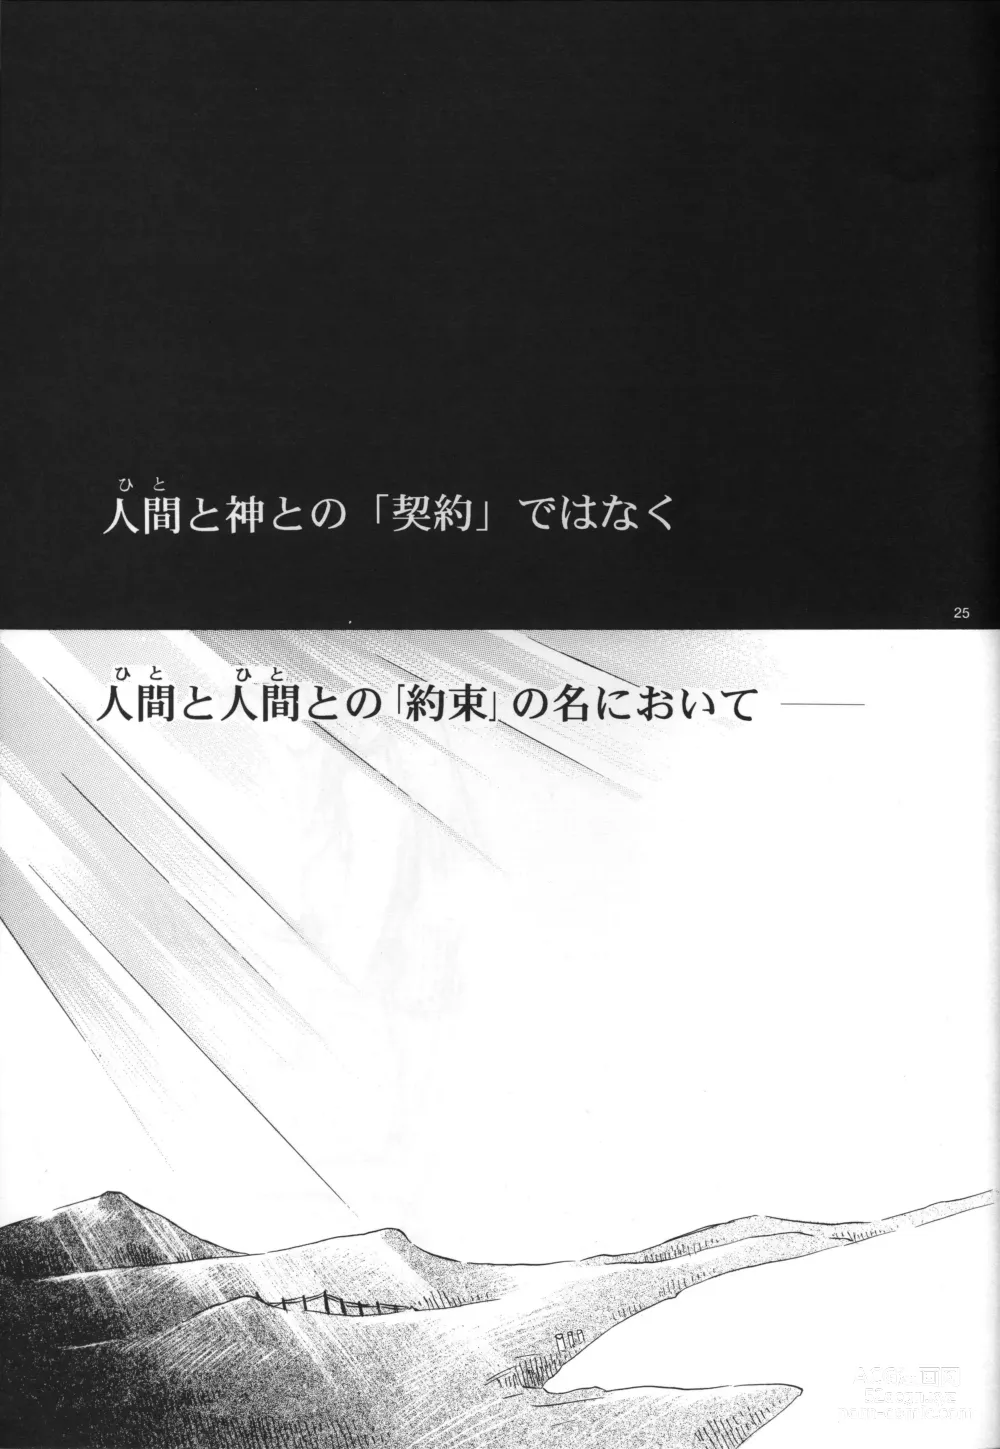 Page 25 of doujinshi Air